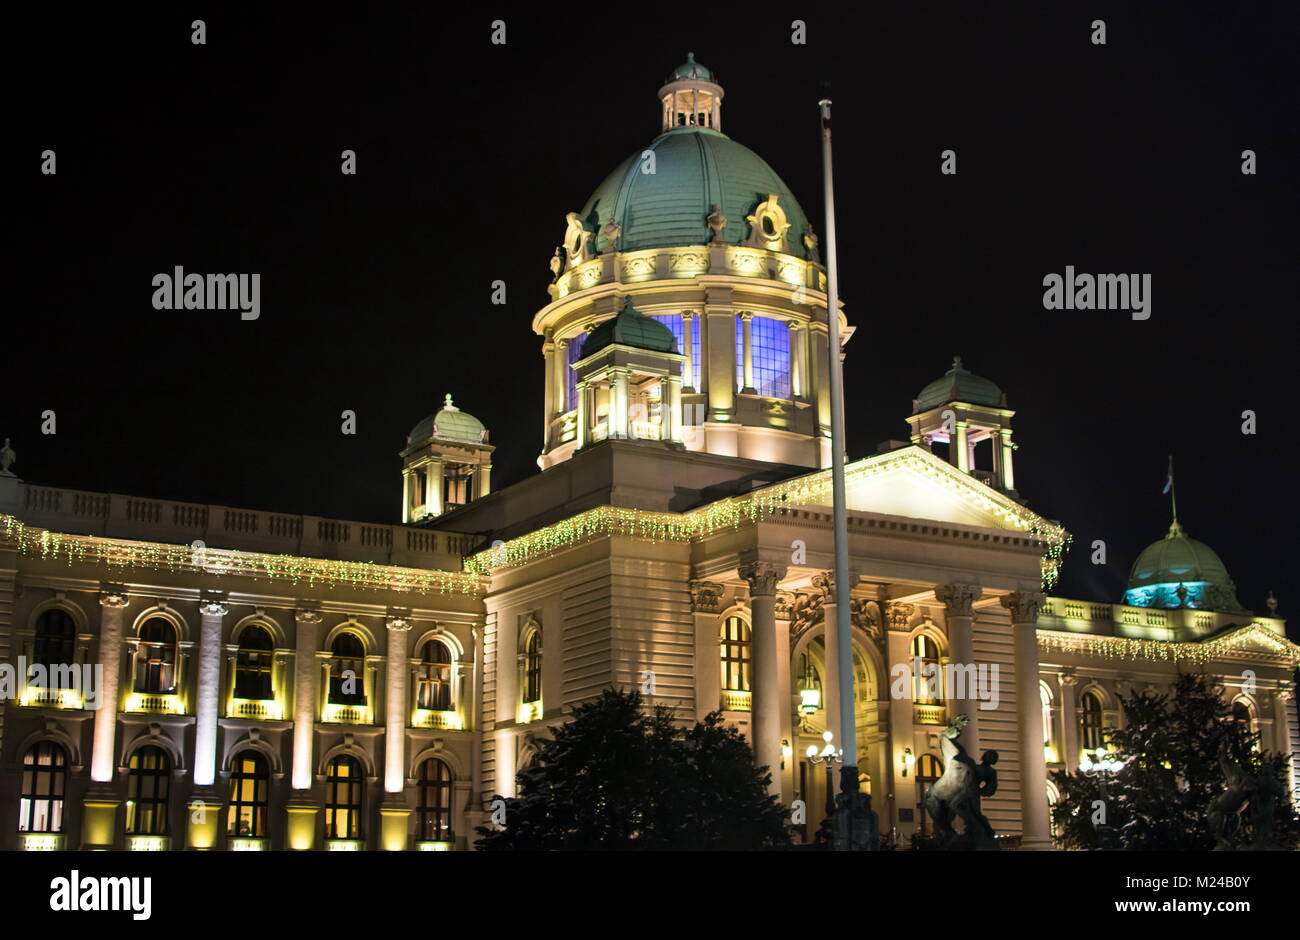 BELGRADE, SERBIE - décembre 4, 2017 : Le bâtiment de l'Assemblée nationale et le Parlement de la République de Serbie à Belgrade dans la nuit Banque D'Images